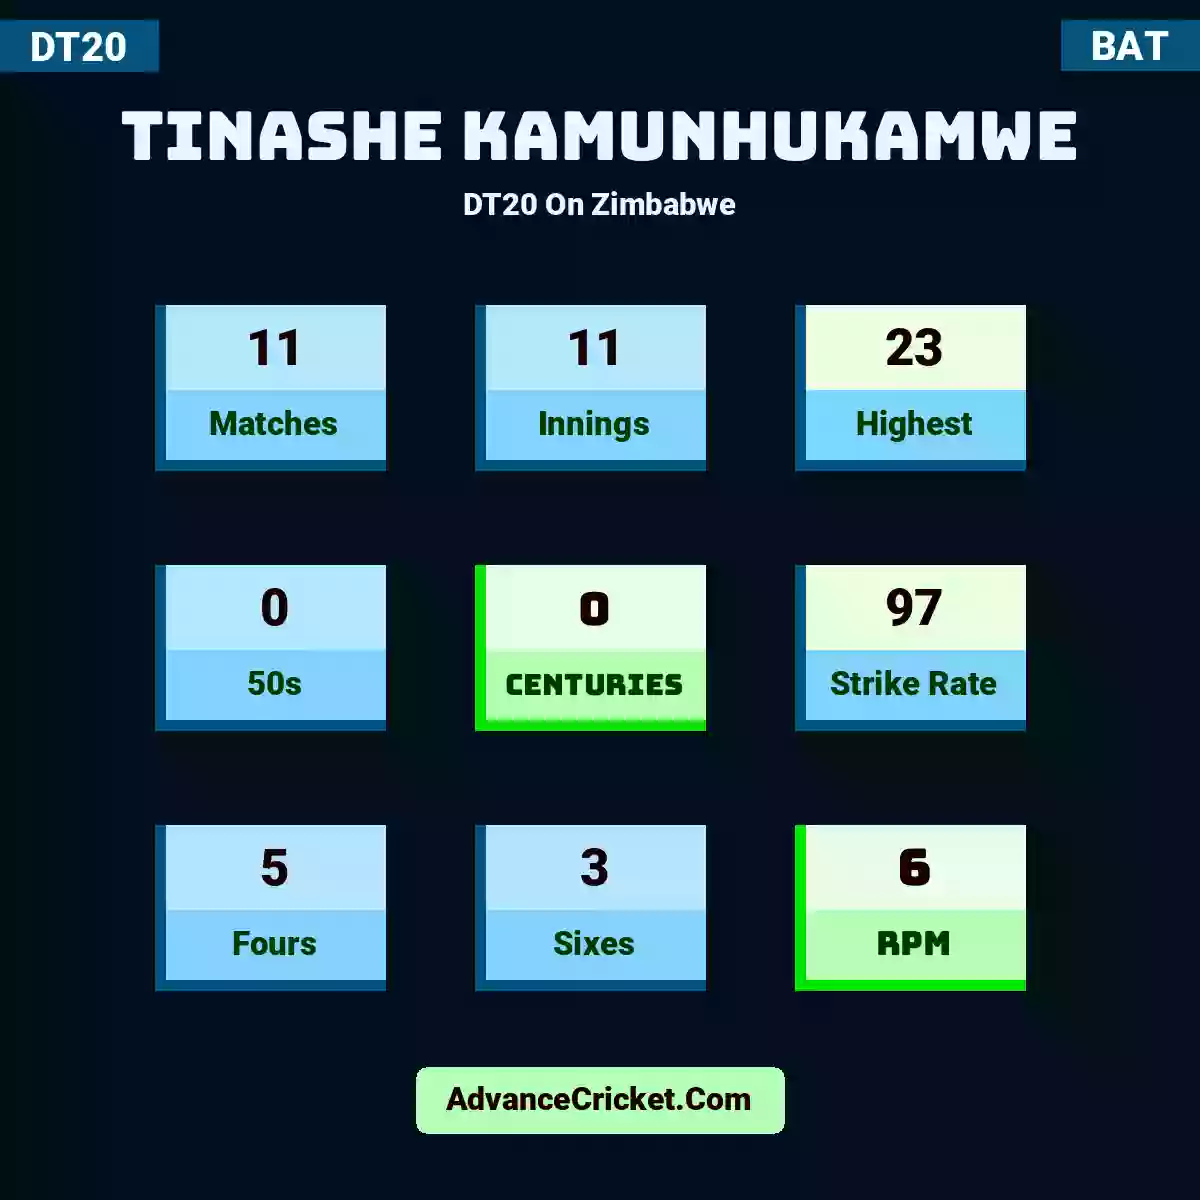 Tinashe Kamunhukamwe DT20  On Zimbabwe, Tinashe Kamunhukamwe played 11 matches, scored 23 runs as highest, 0 half-centuries, and 0 centuries, with a strike rate of 97. T.Kamunhukamwe hit 5 fours and 3 sixes, with an RPM of 6.